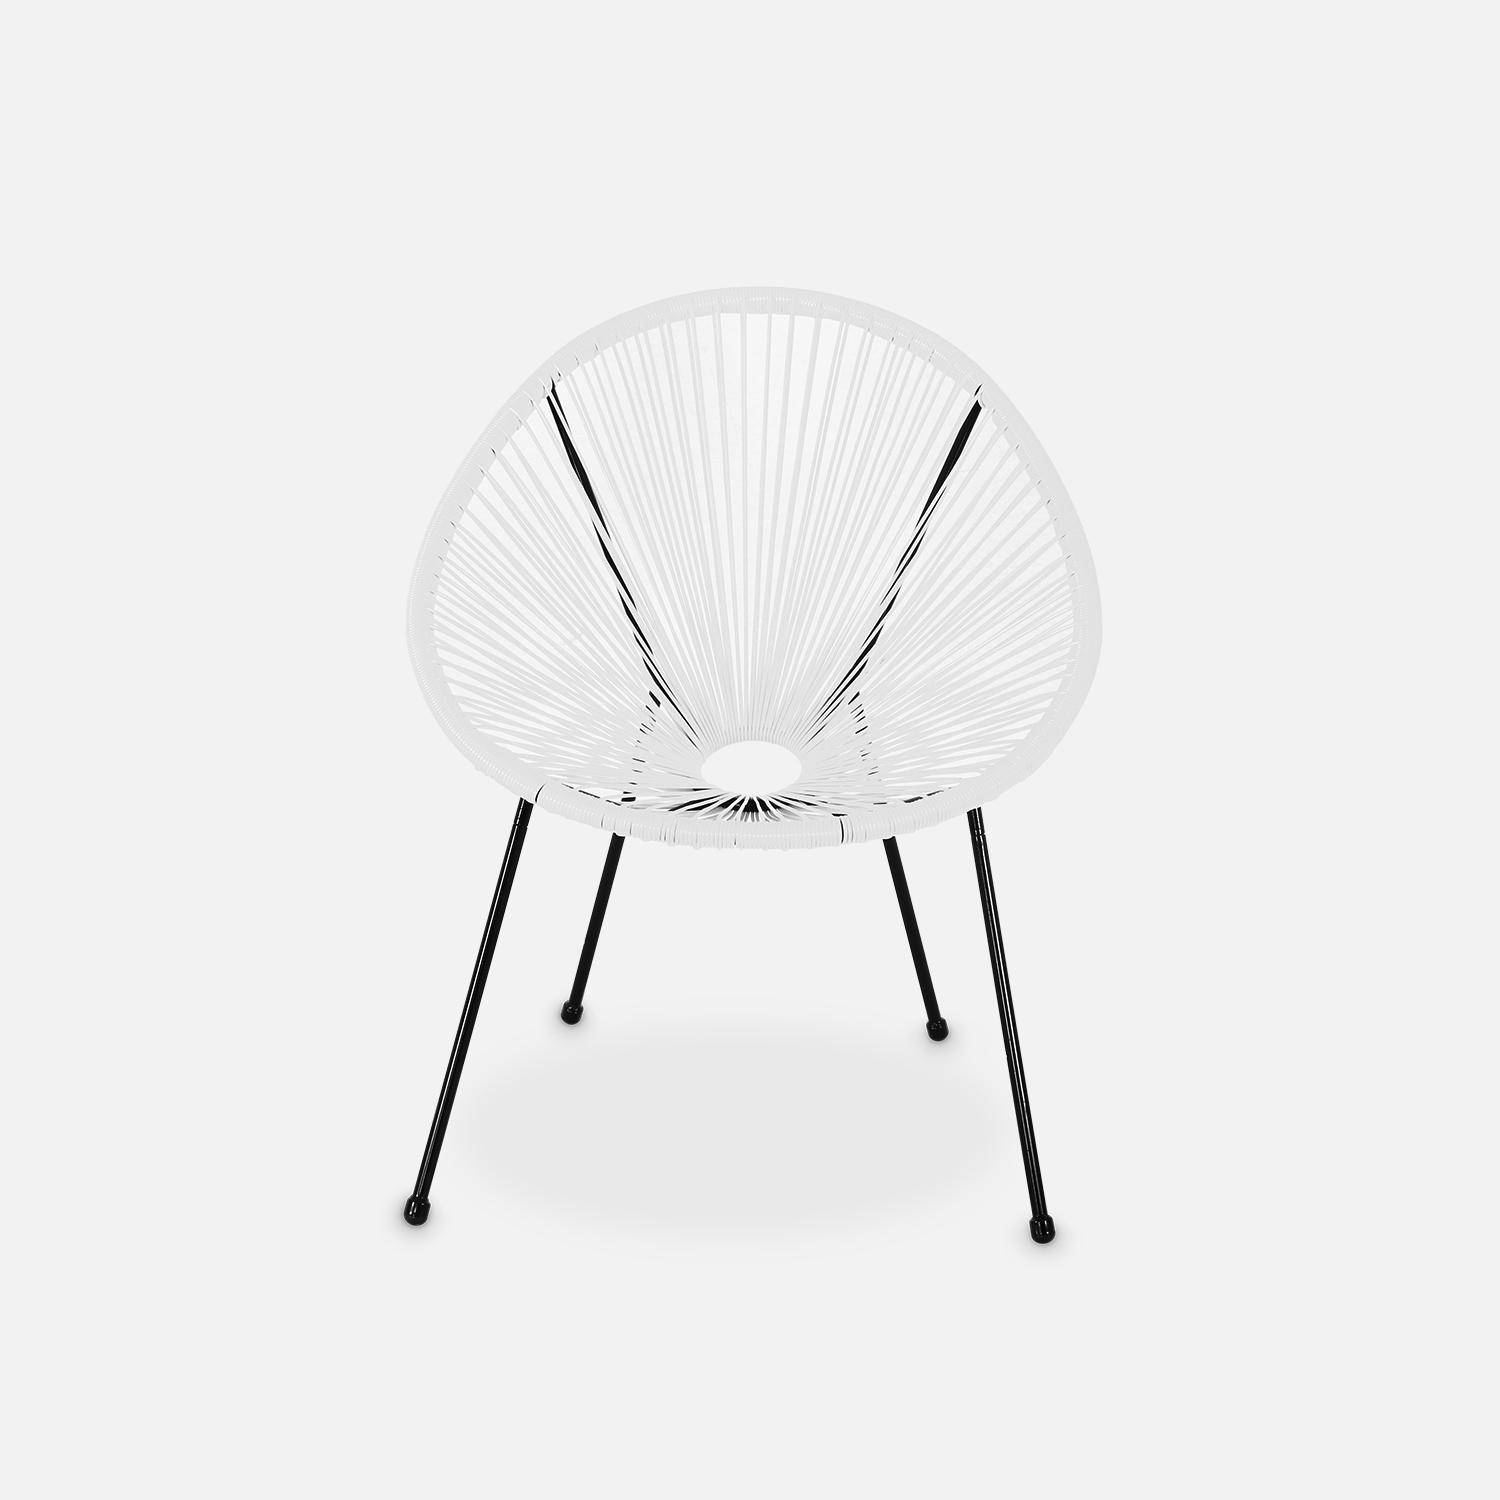 Lot de 2 fauteuils design Oeuf - Acapulco Blanc - Fauteuils 4 pieds design rétro, cordage plastique, intérieur / extérieur Photo4